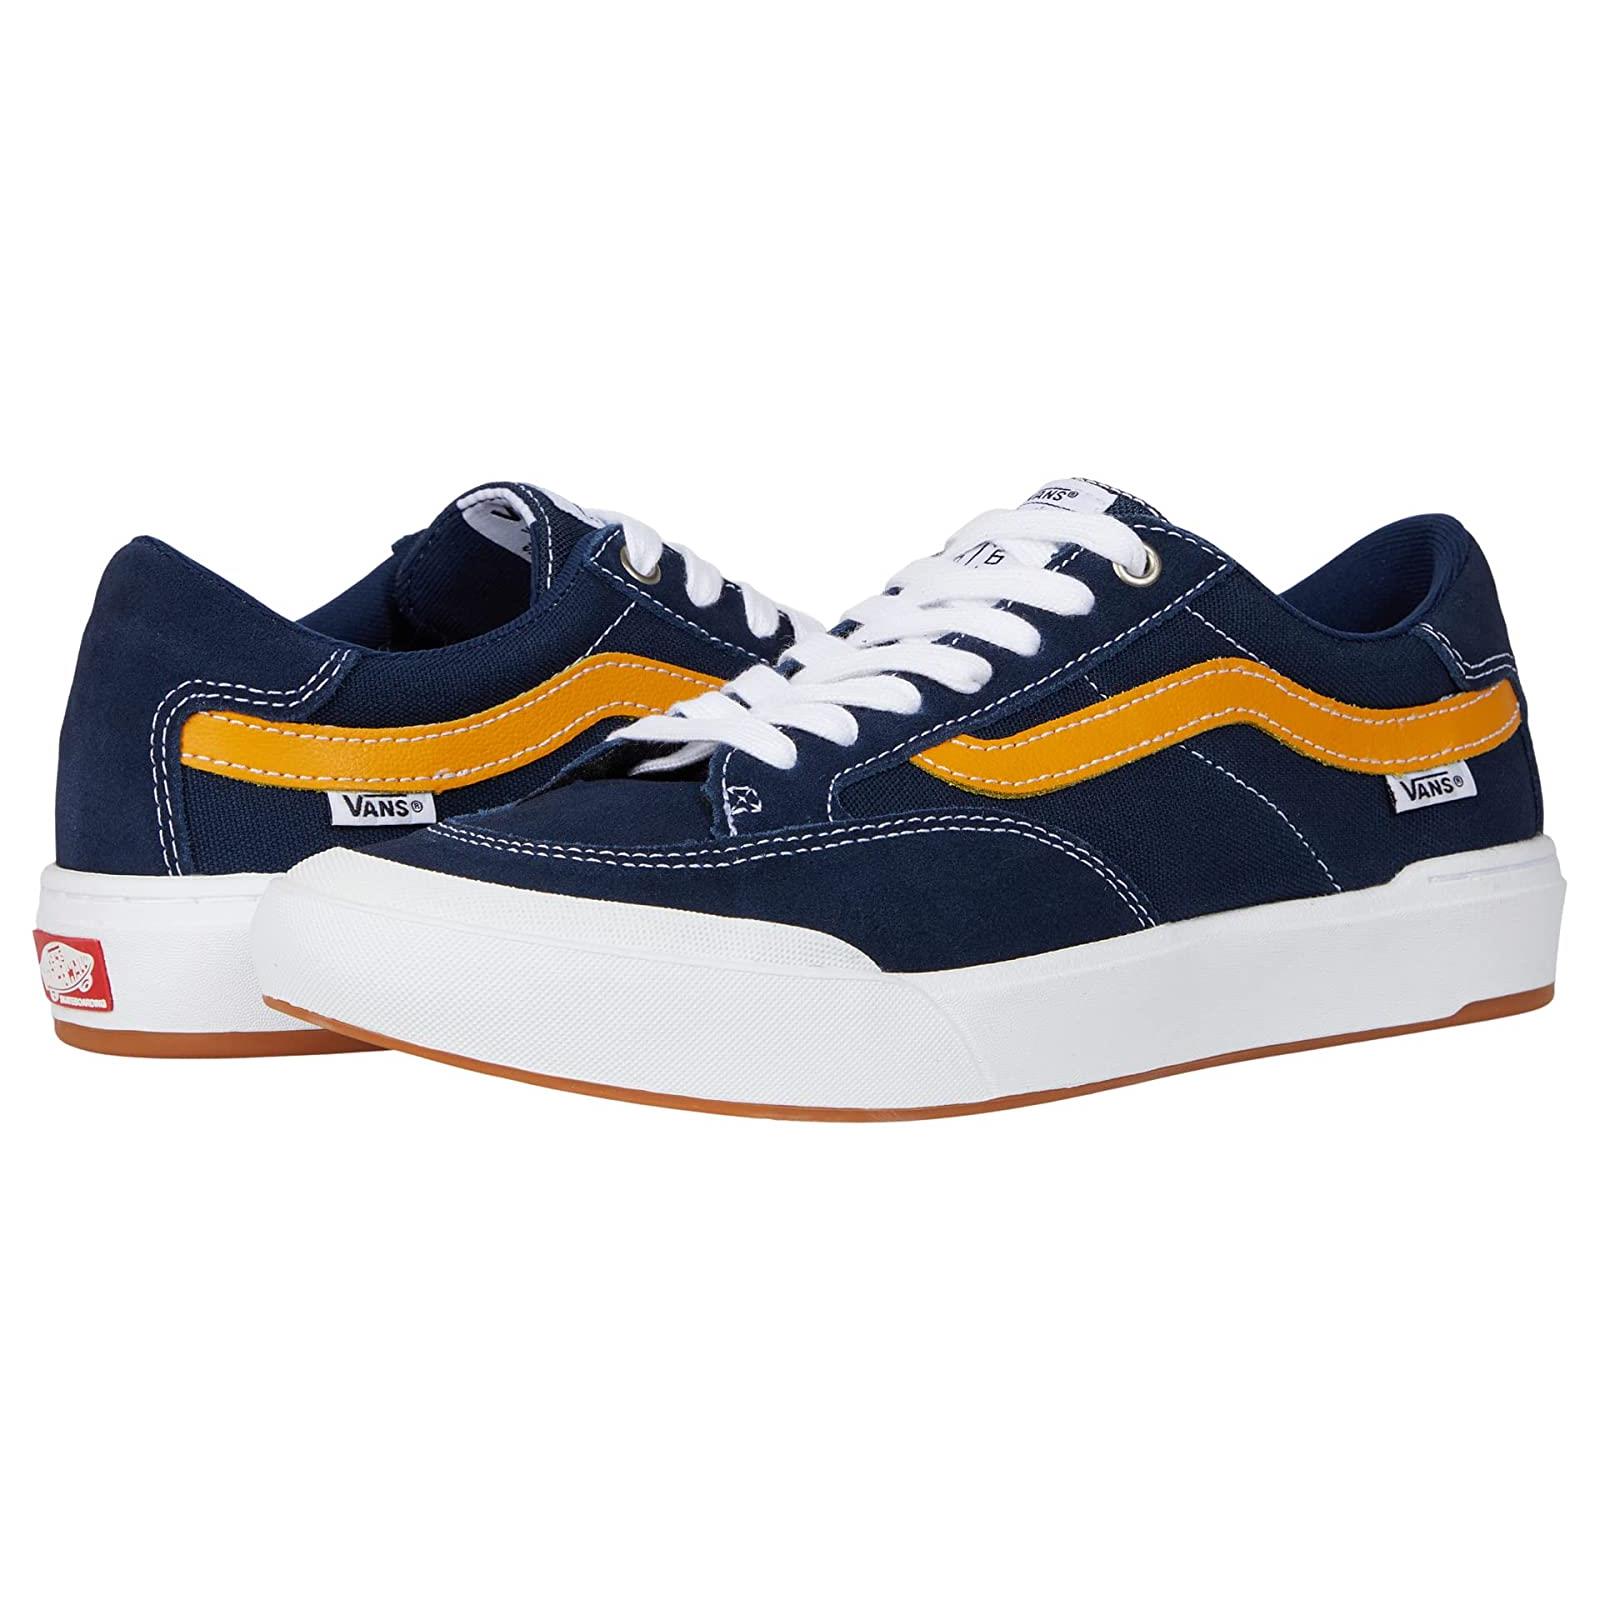 Man`s Sneakers Athletic Shoes Vans Berle Navy/Gold